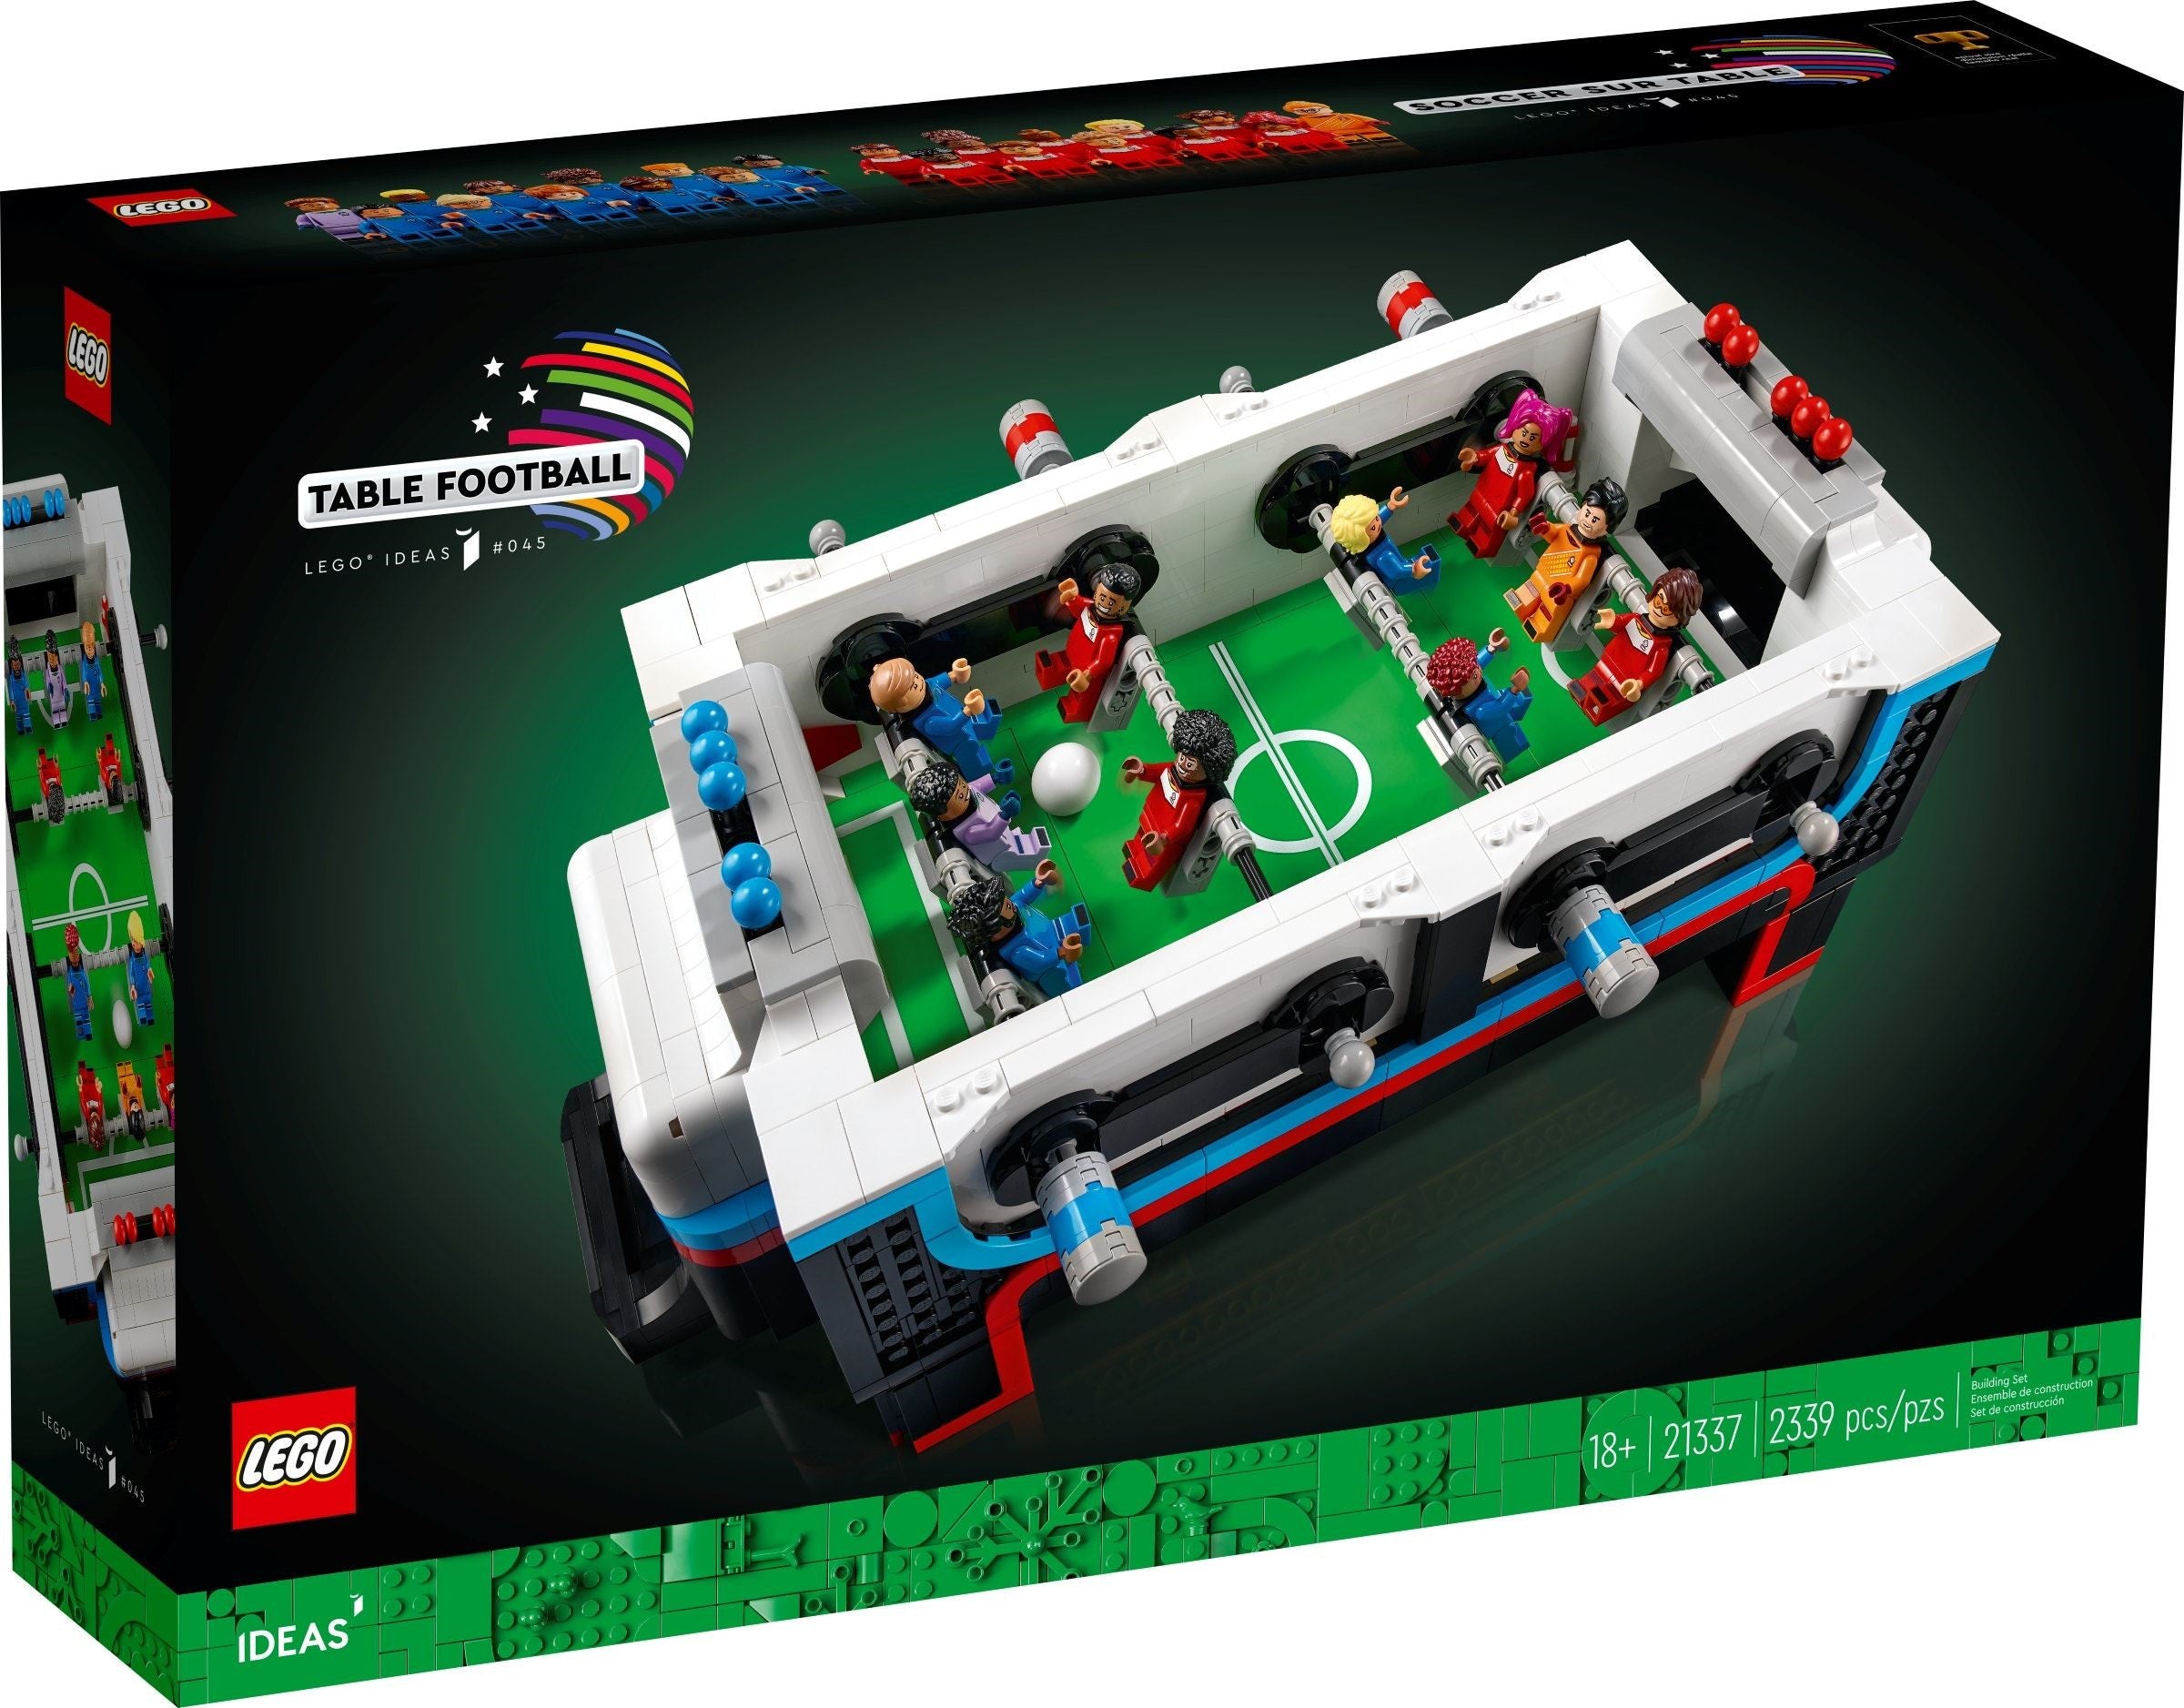 Lego Ideas 21337 - Table Football